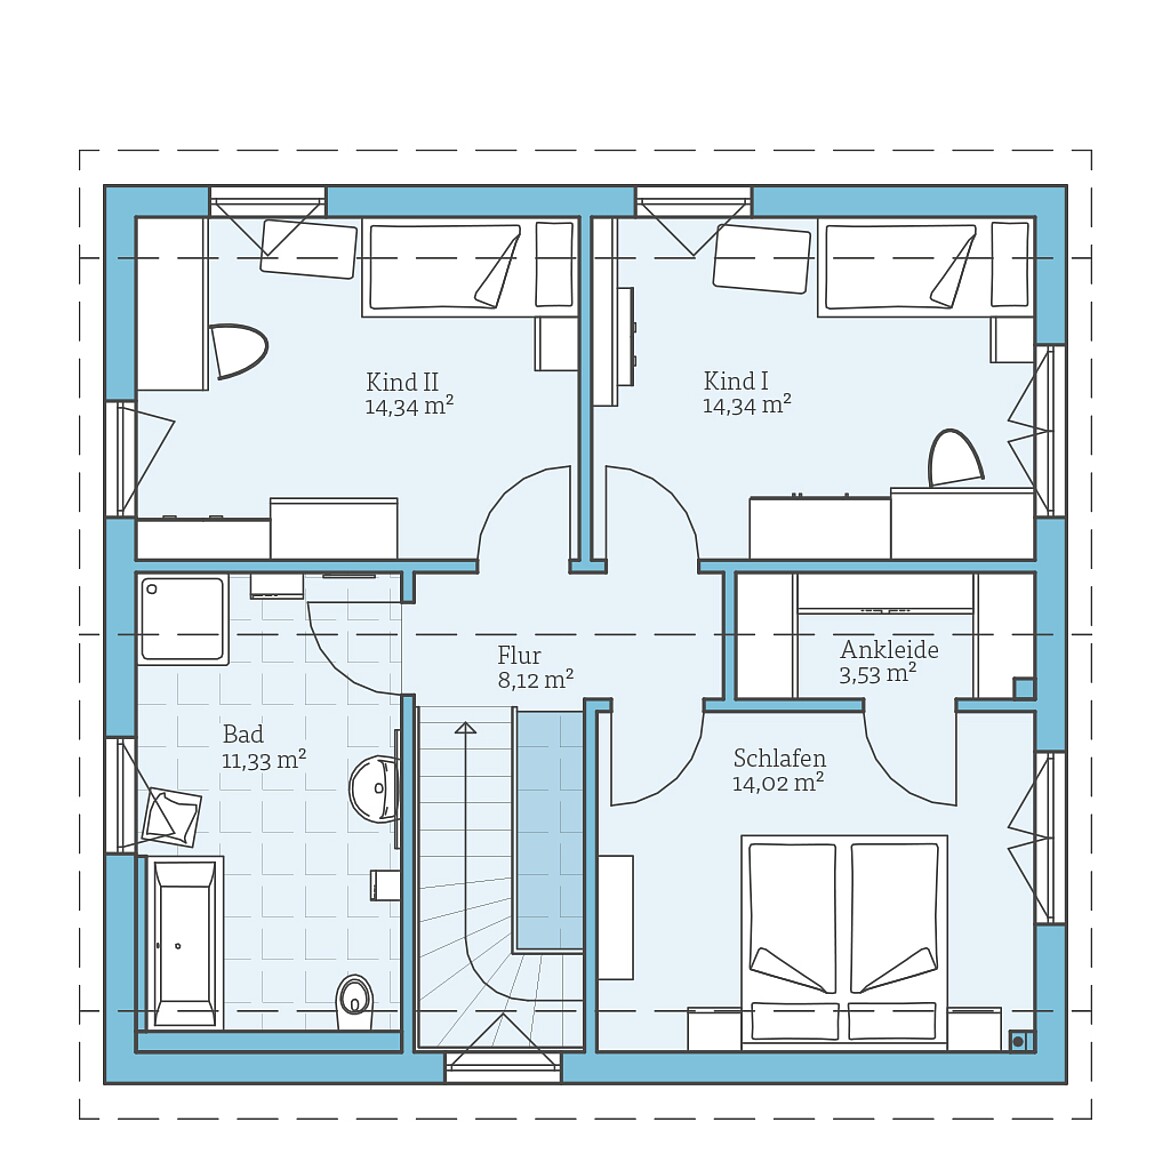 Prefabricated house Variant 25-135: Top floor plan